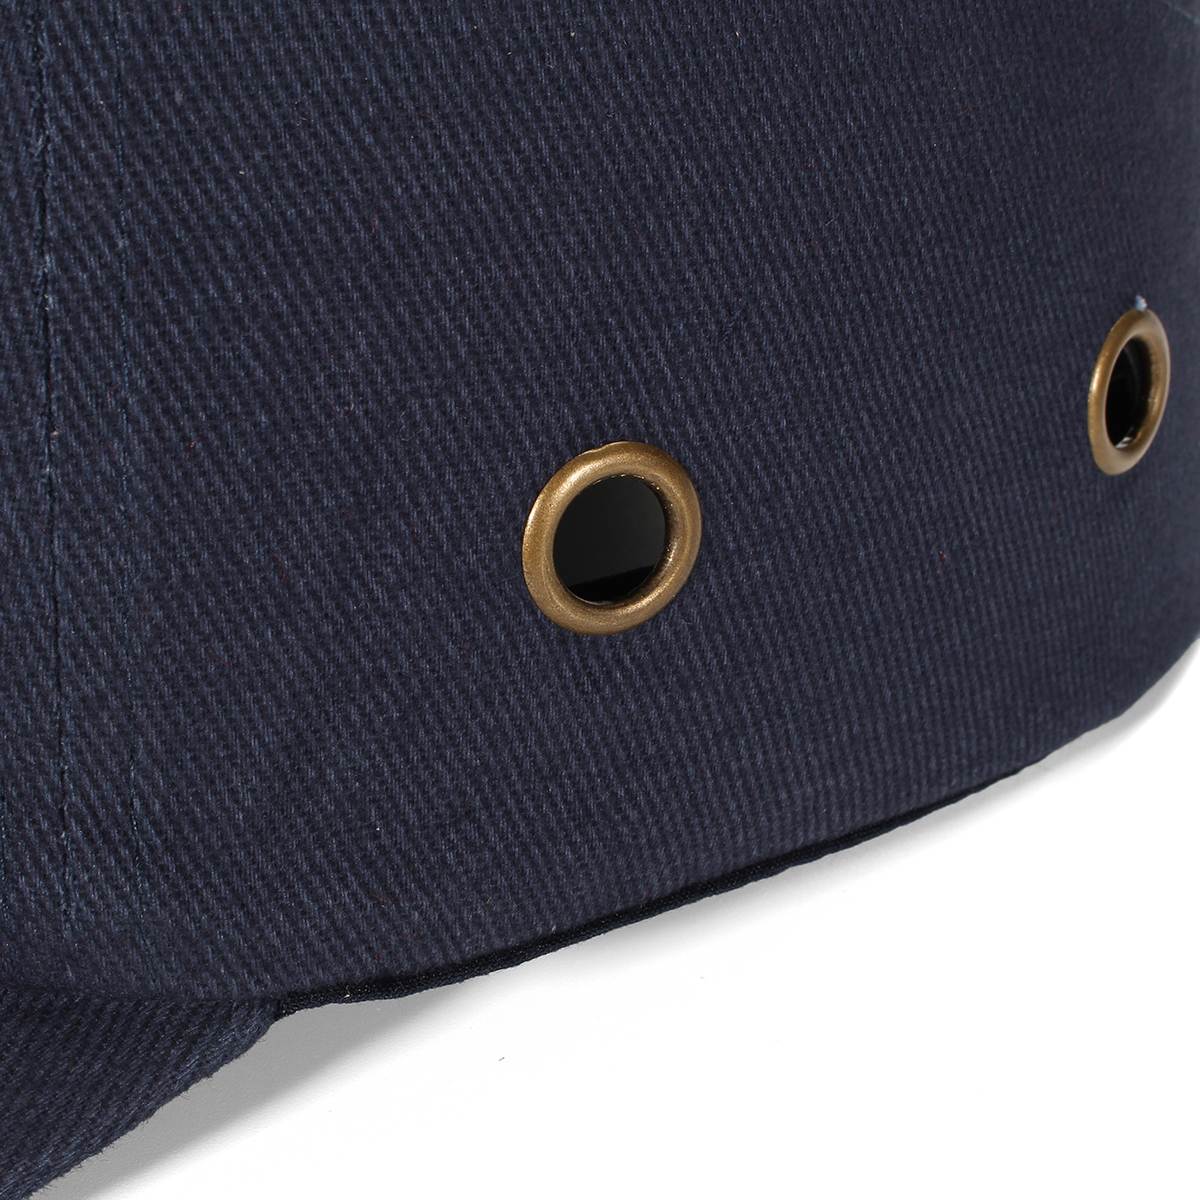 Anpwoo Blu da Baseball Bump Caps-Leggero Cappello Duro di Sicurezza Testa Tappi di Protezione Sul Posto di Lavoro Casco di Sicurezza